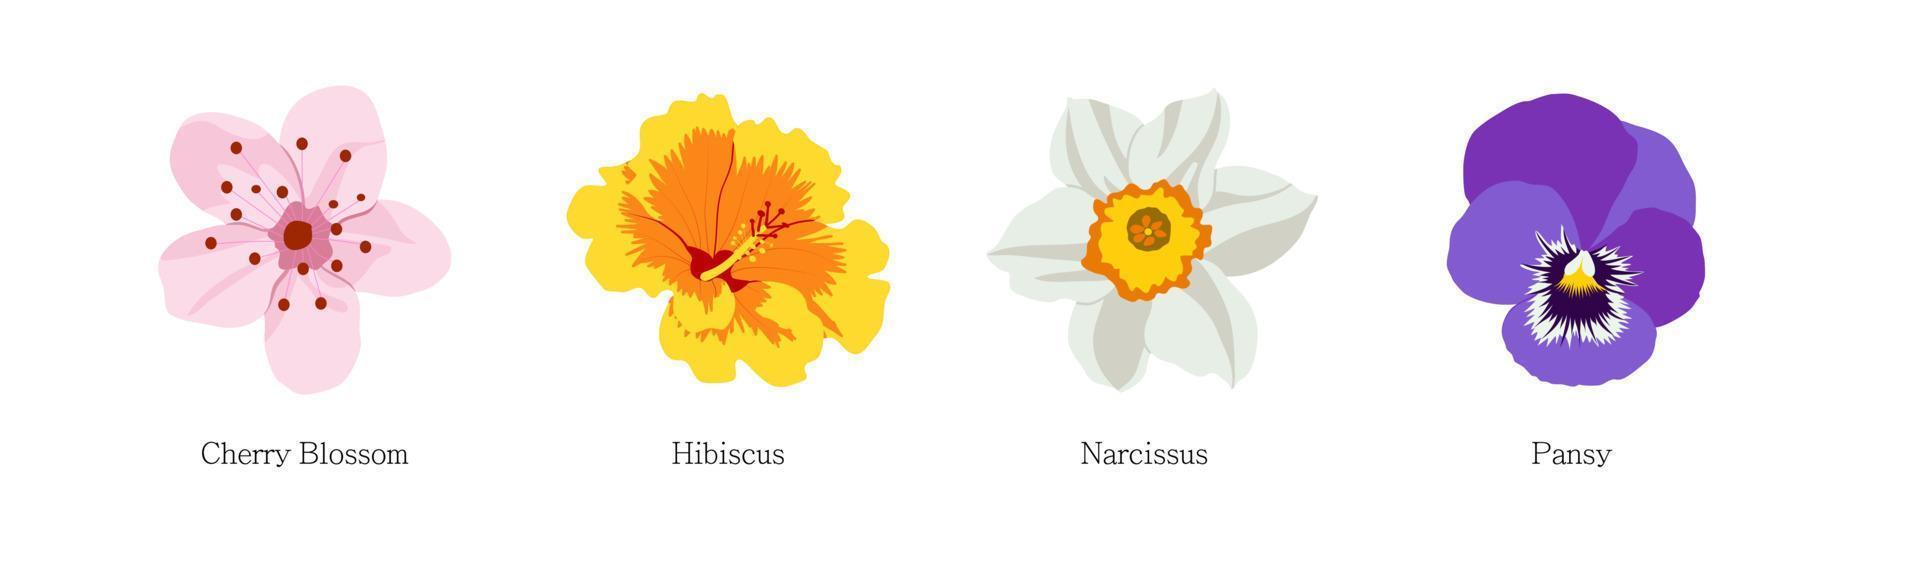 conjunto de flores diferentes sobre fondo blanco. vector